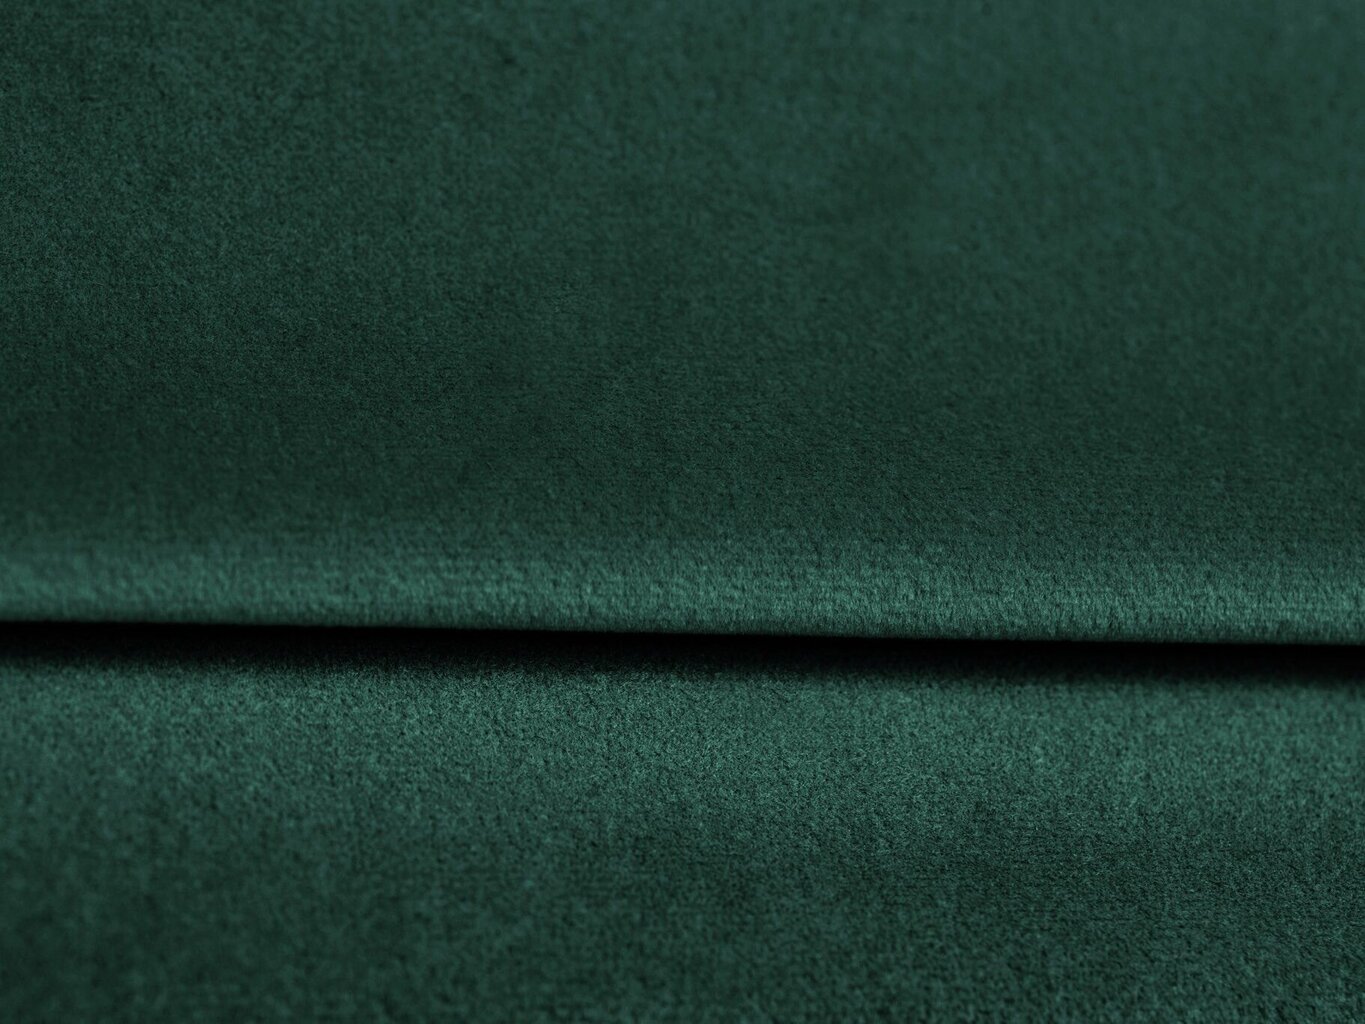 Lovos galvūgalis Mazzini Sofas Begonia 200 cm, žalias kaina ir informacija | Lovos | pigu.lt